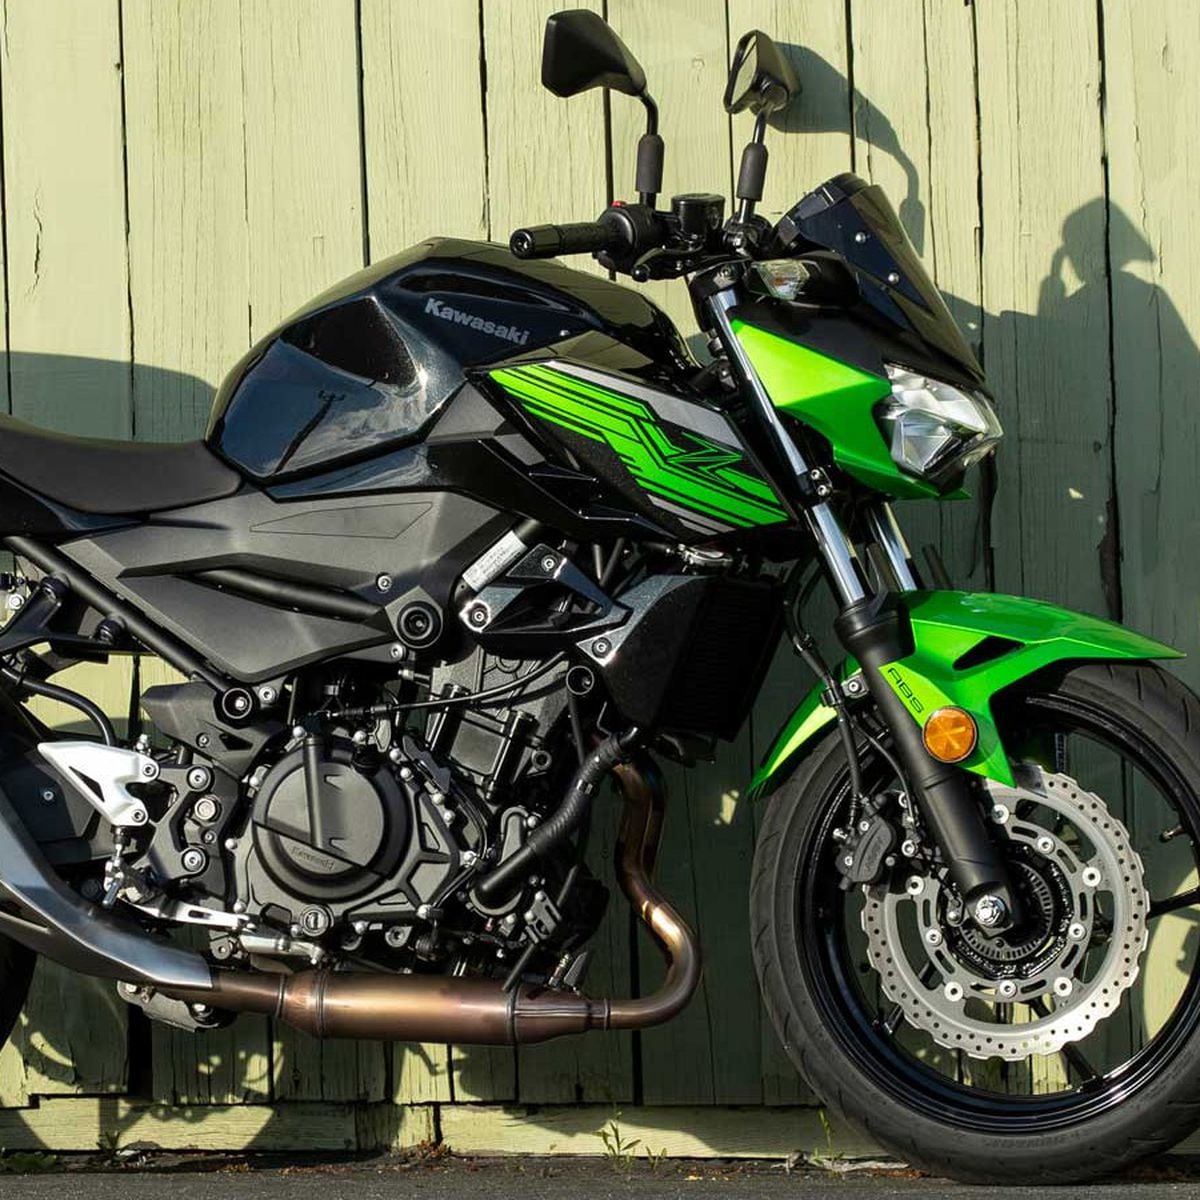 2019 Kawasaki Z400 First Ride Review